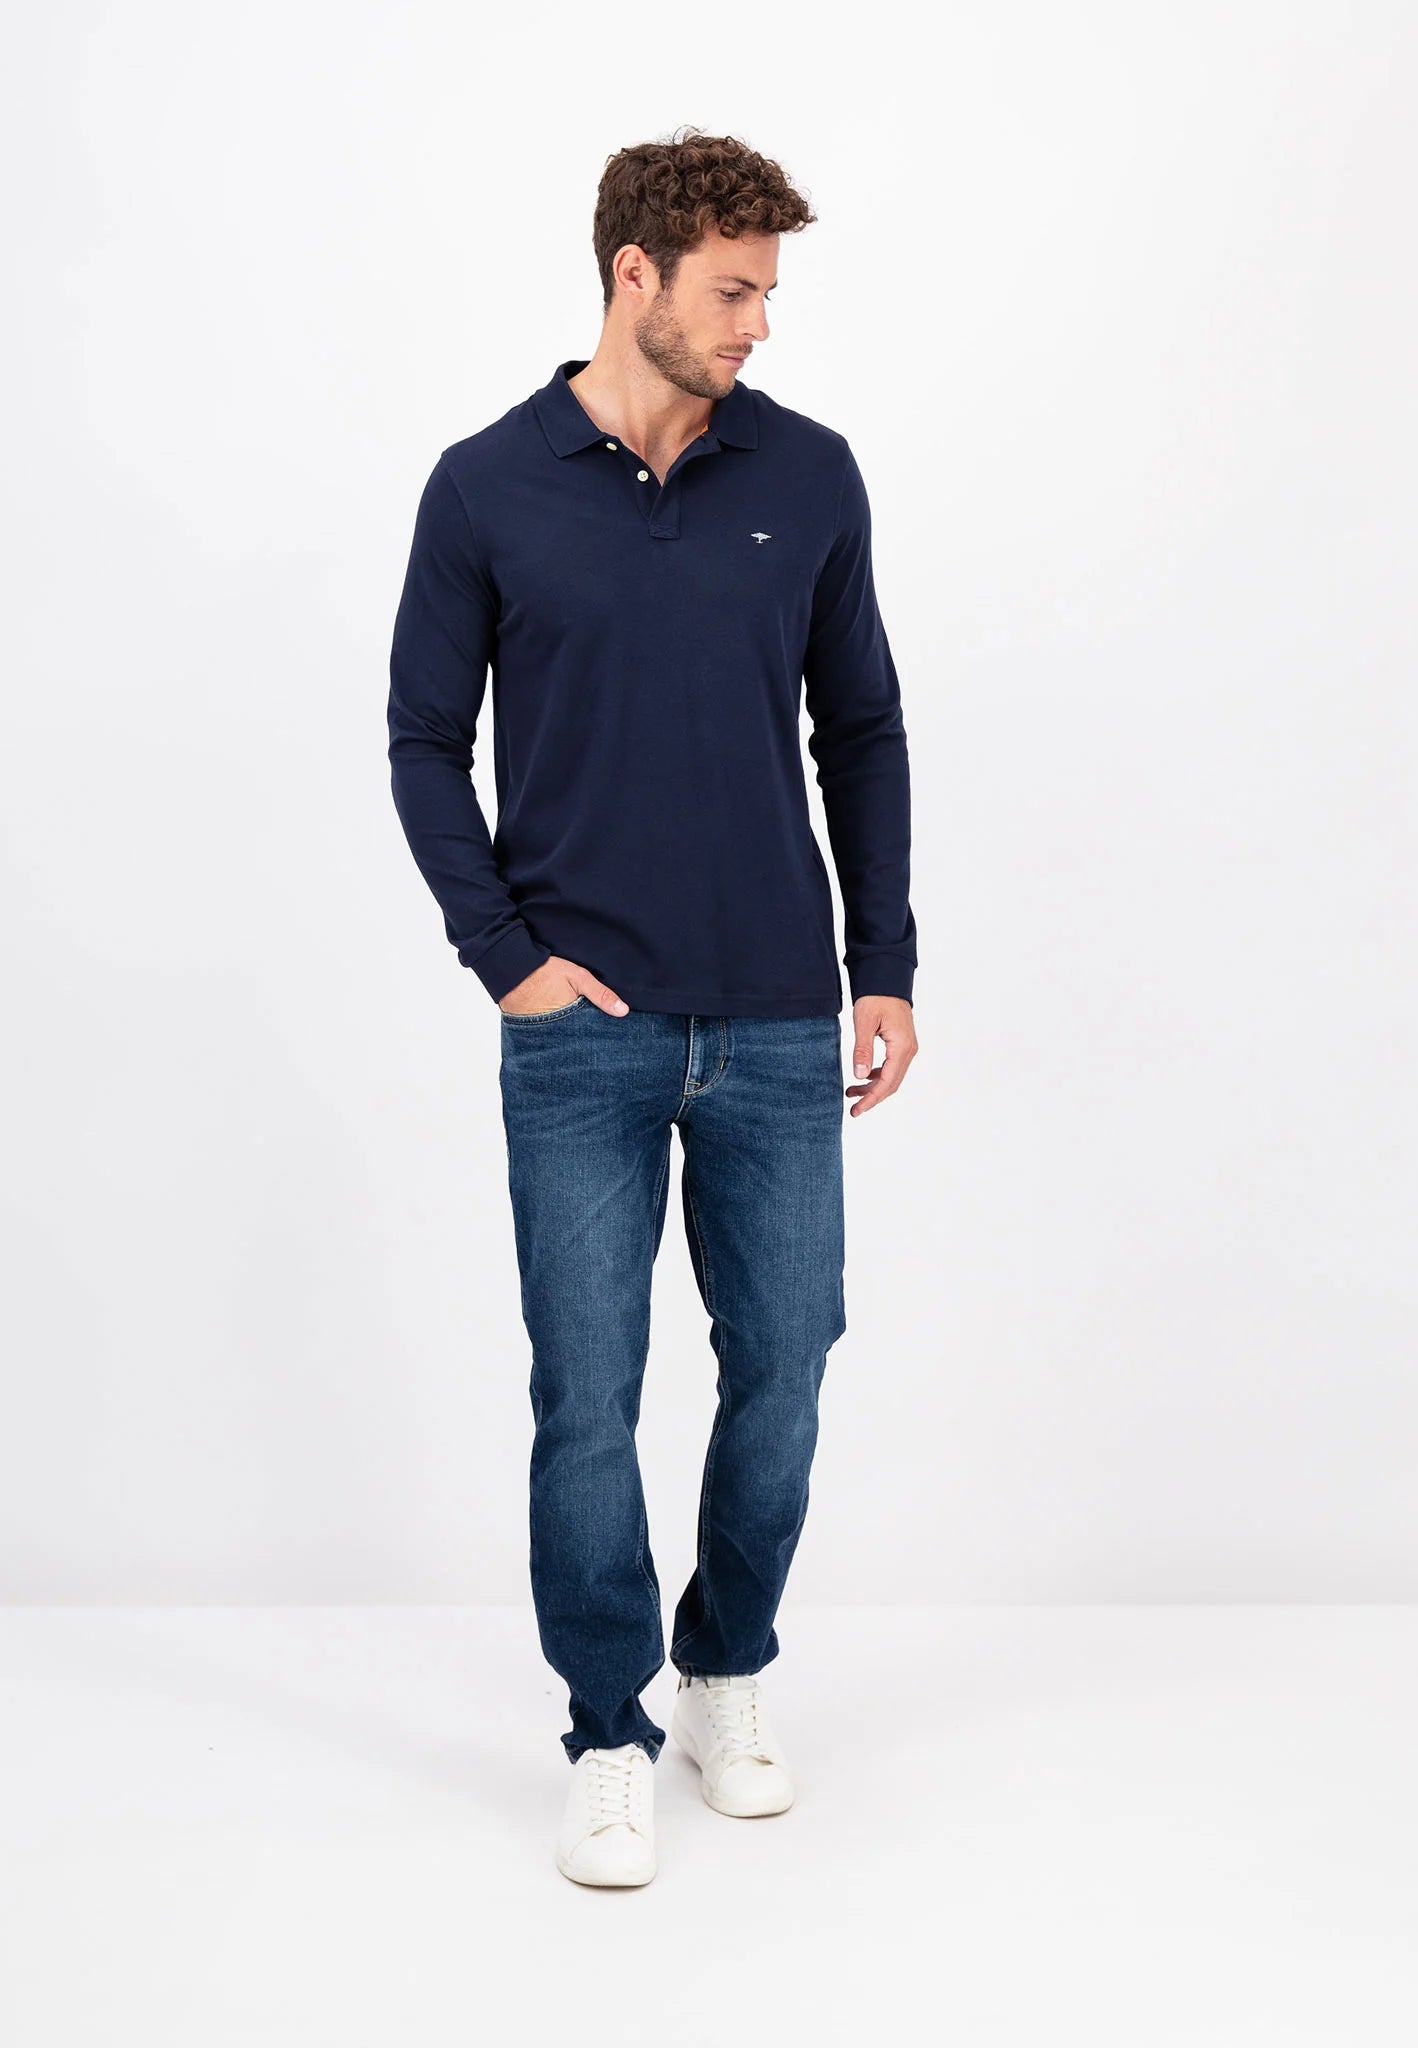 Shirt Sleeve FYNCH-HATTON Long – Polo